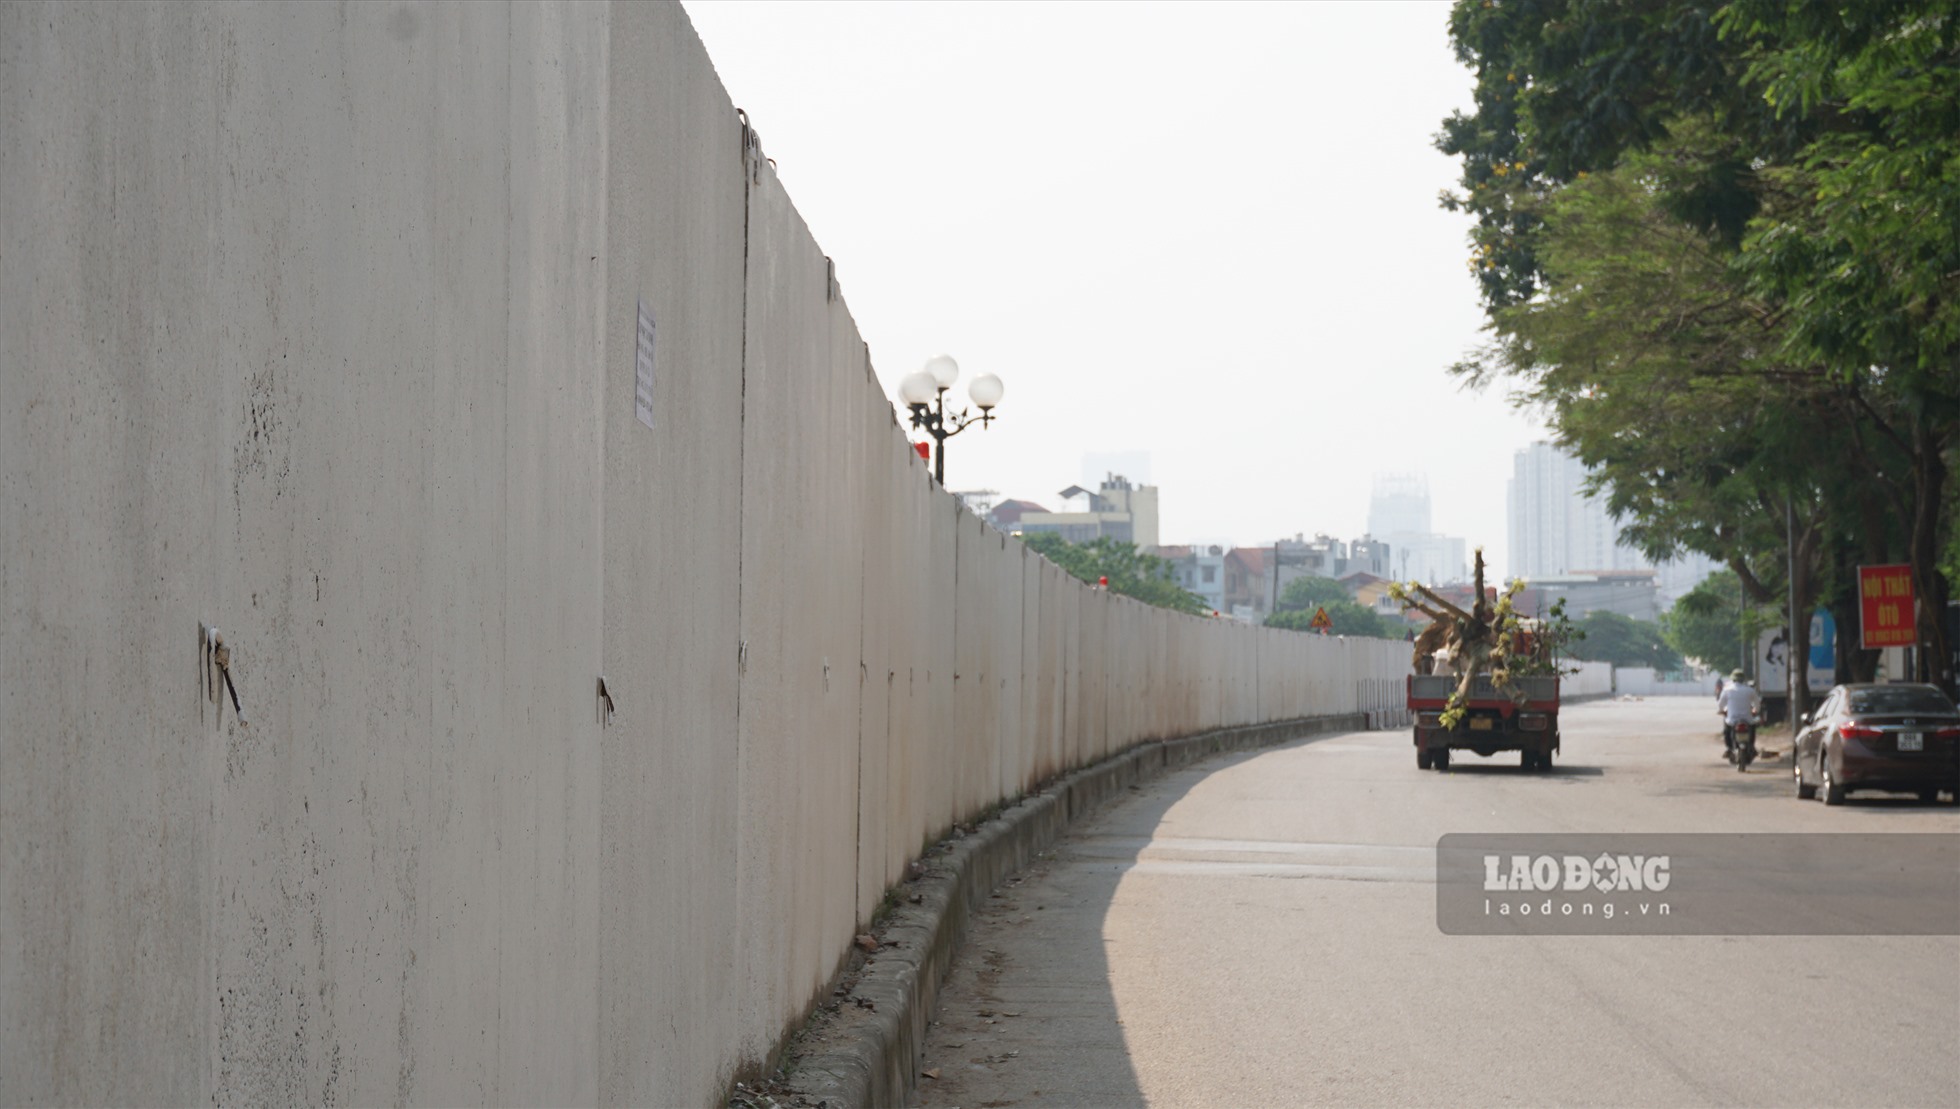 Theo ghi nhận, tại khu đô thị Định Công (quận Hoàng Mai) trong thời gian vừa qua xuất hiện một hàng rào bê tông dài khoảng 500m được dựng giữa đường vành đai 2,5, bịt hết các lối quay đầu, sang đường của người dân.